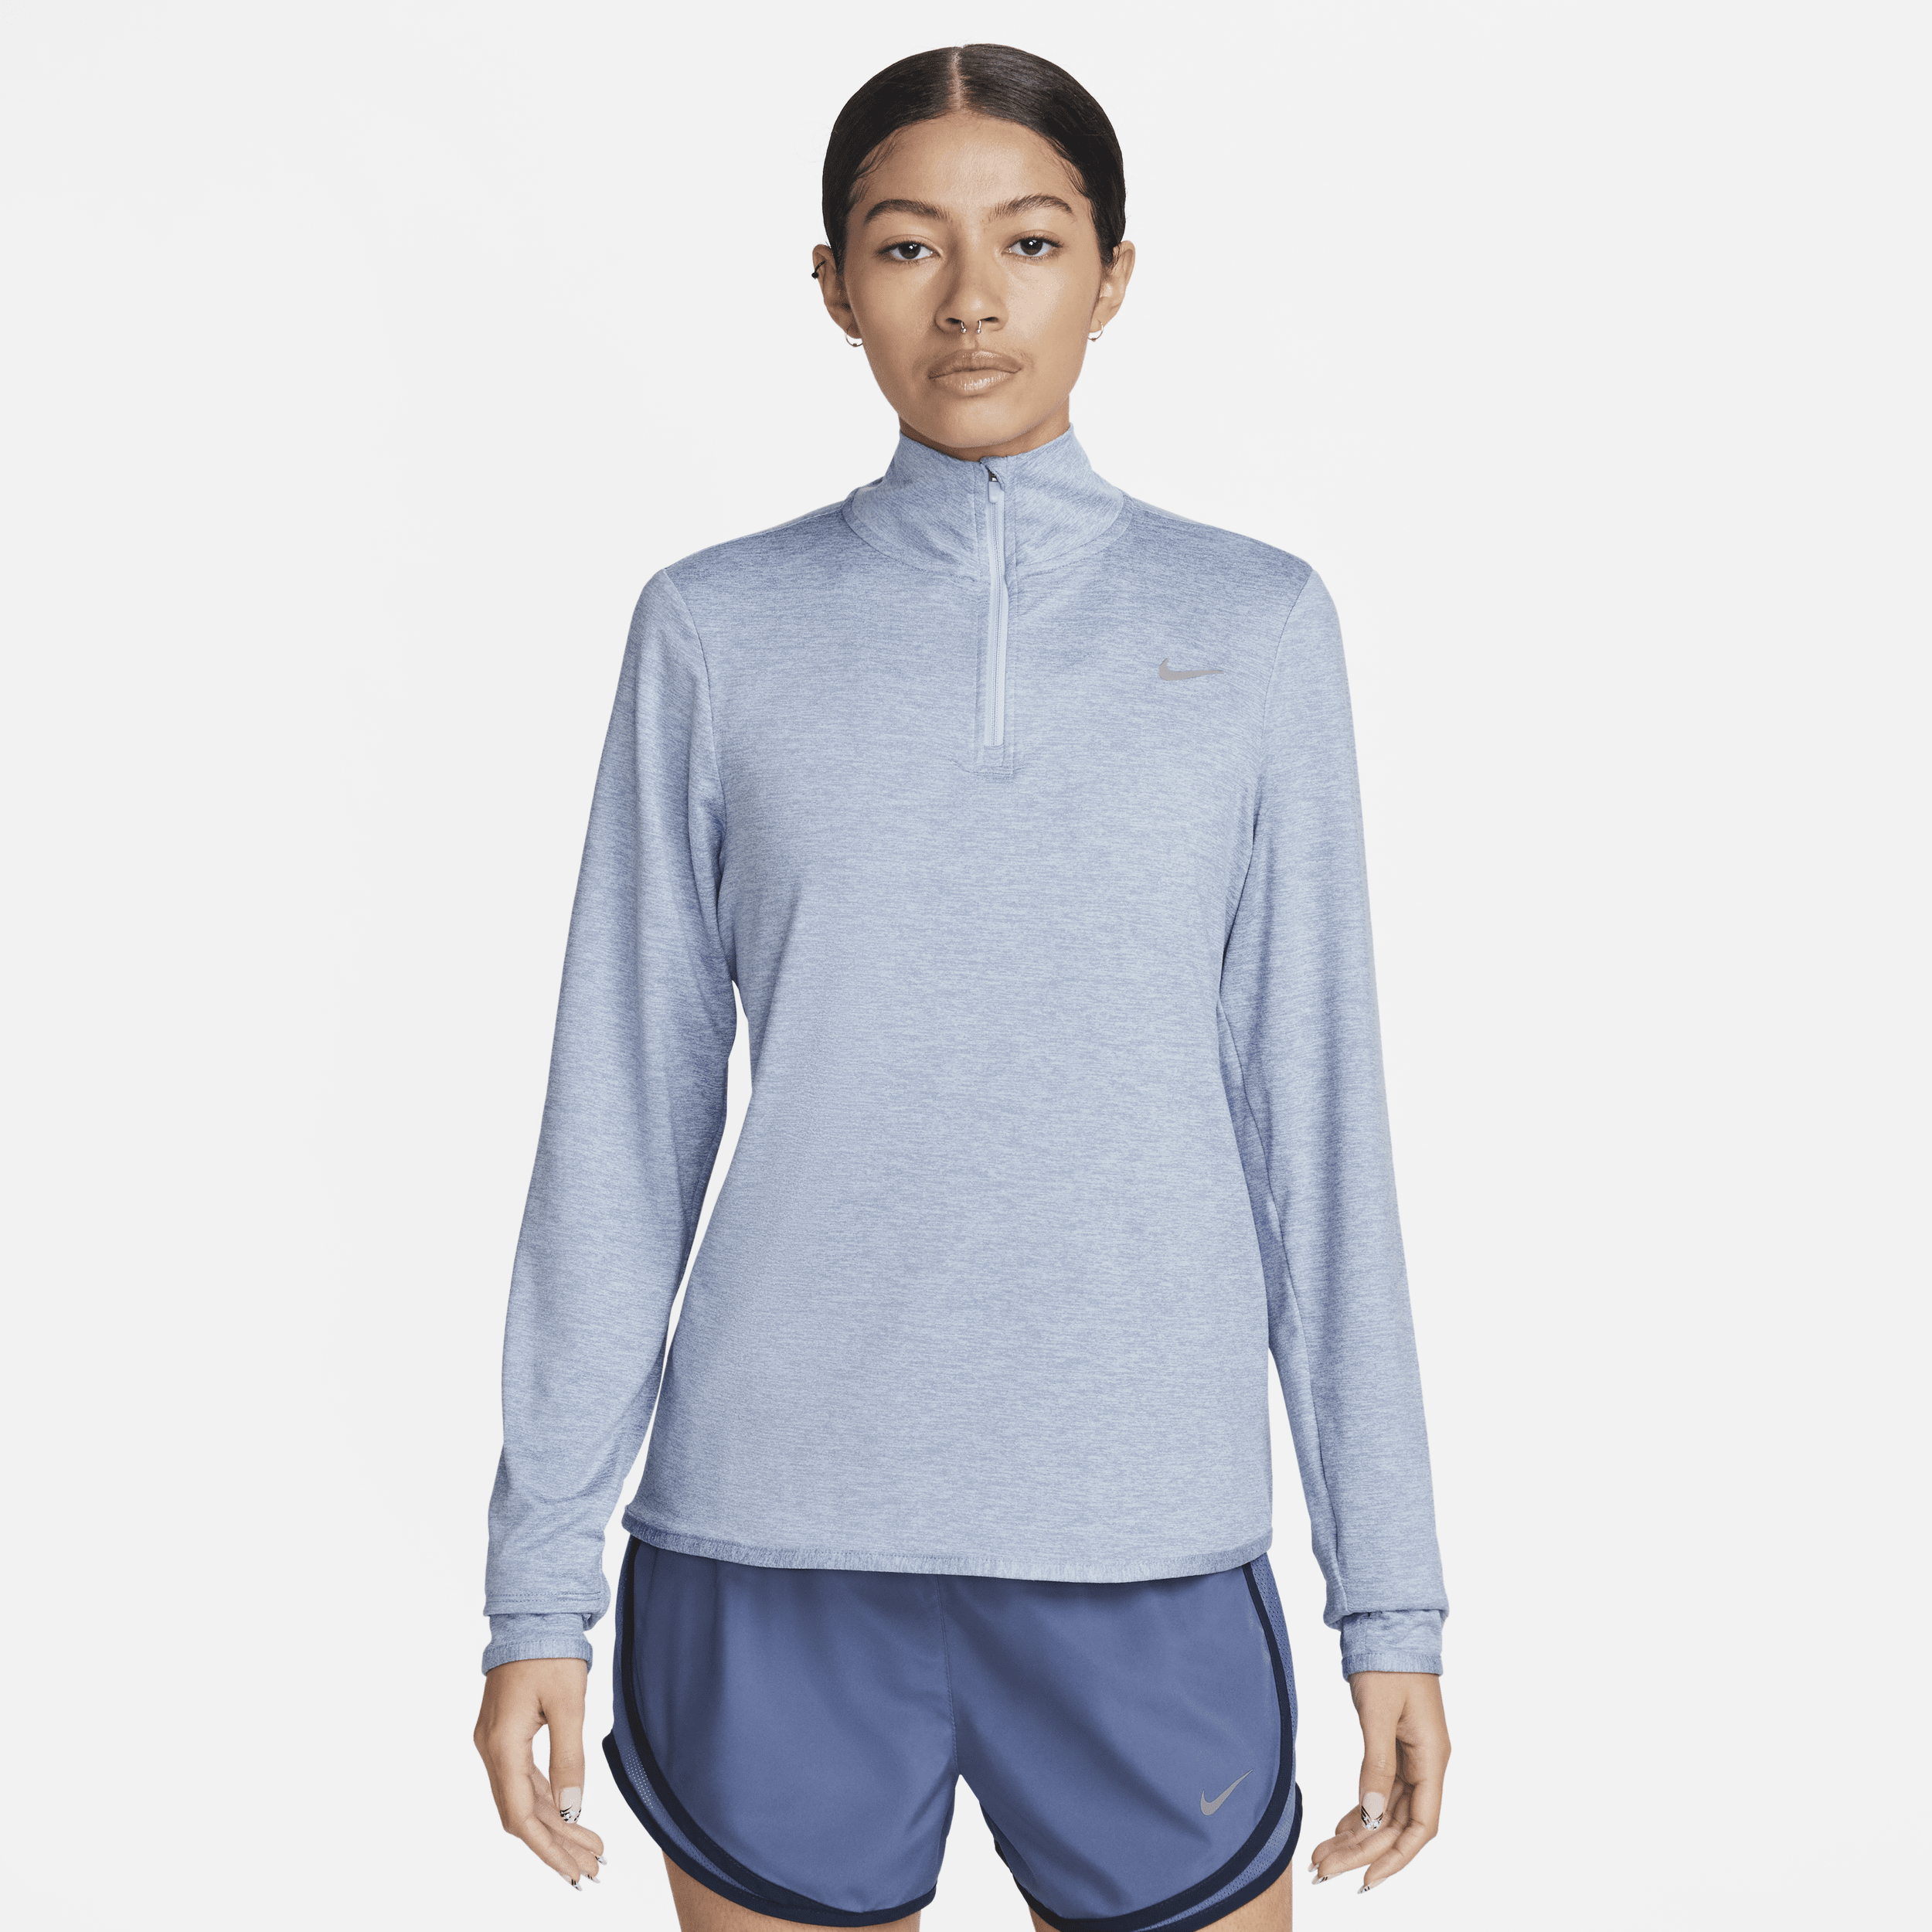 Nike Swift hardlooptop met korte rits en UV-bescherming voor dames Blauw